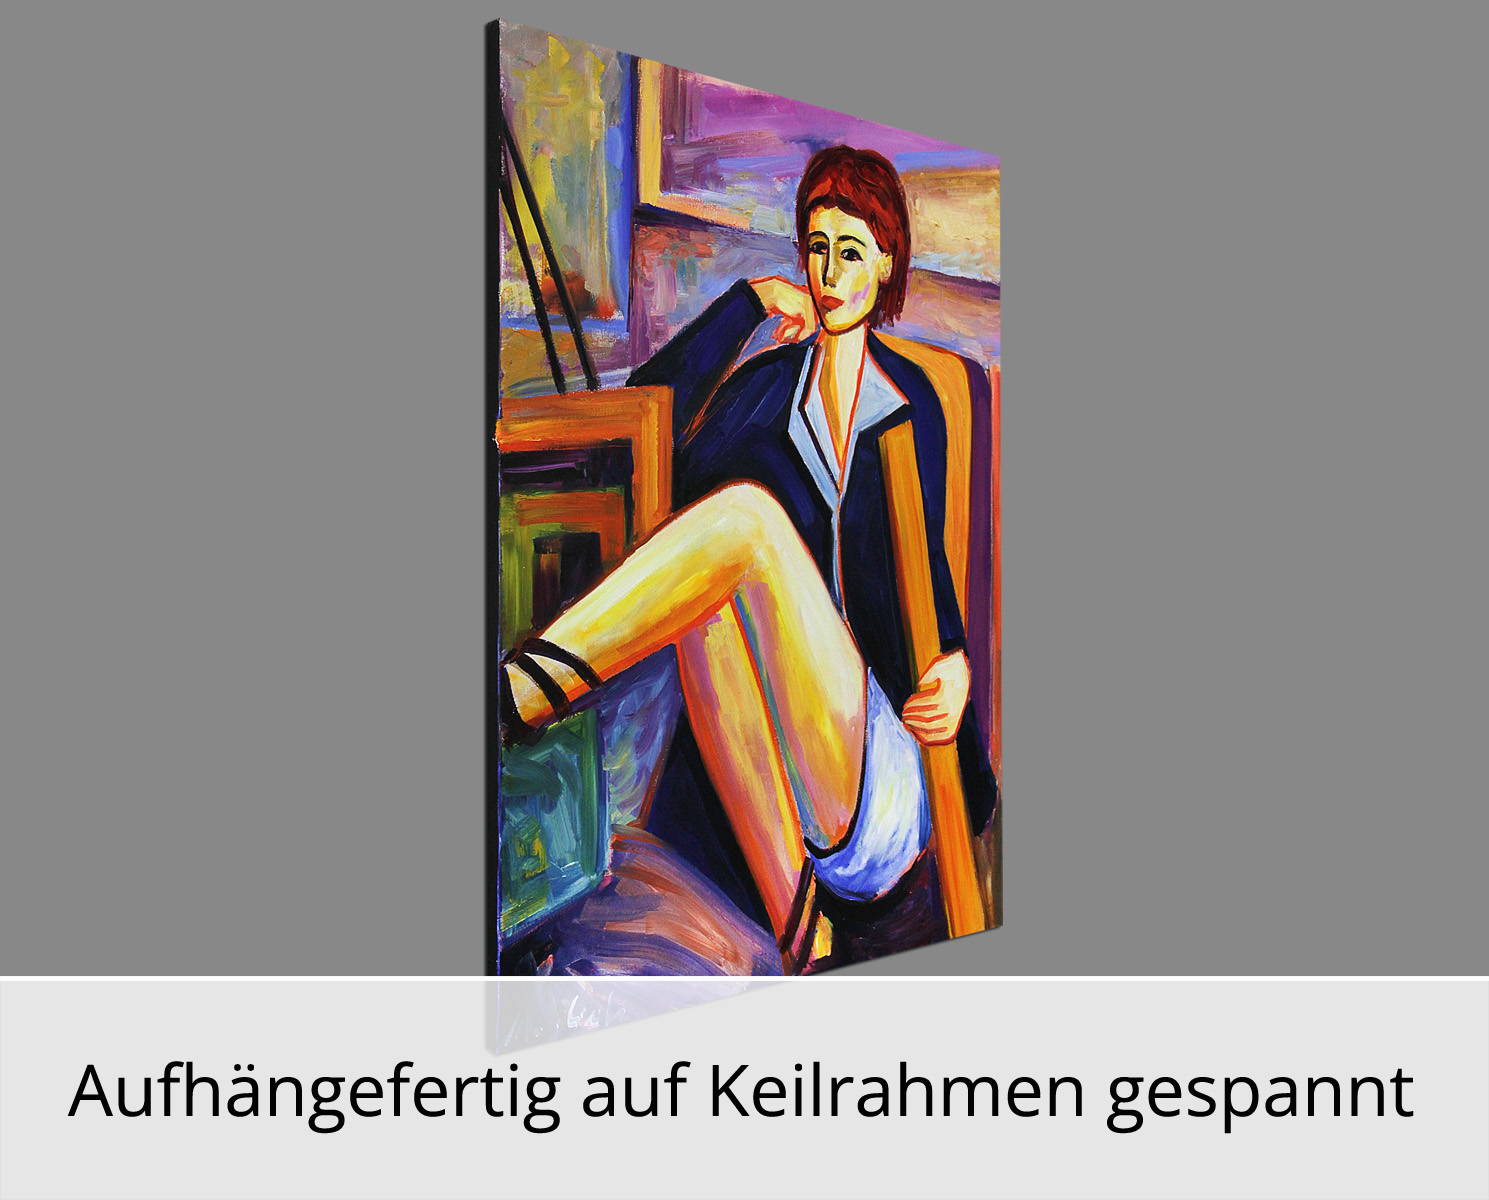 M. Cieśla: Mädchen im Studio 17, Original/Unikat, Expressionistisches Ölgemälde